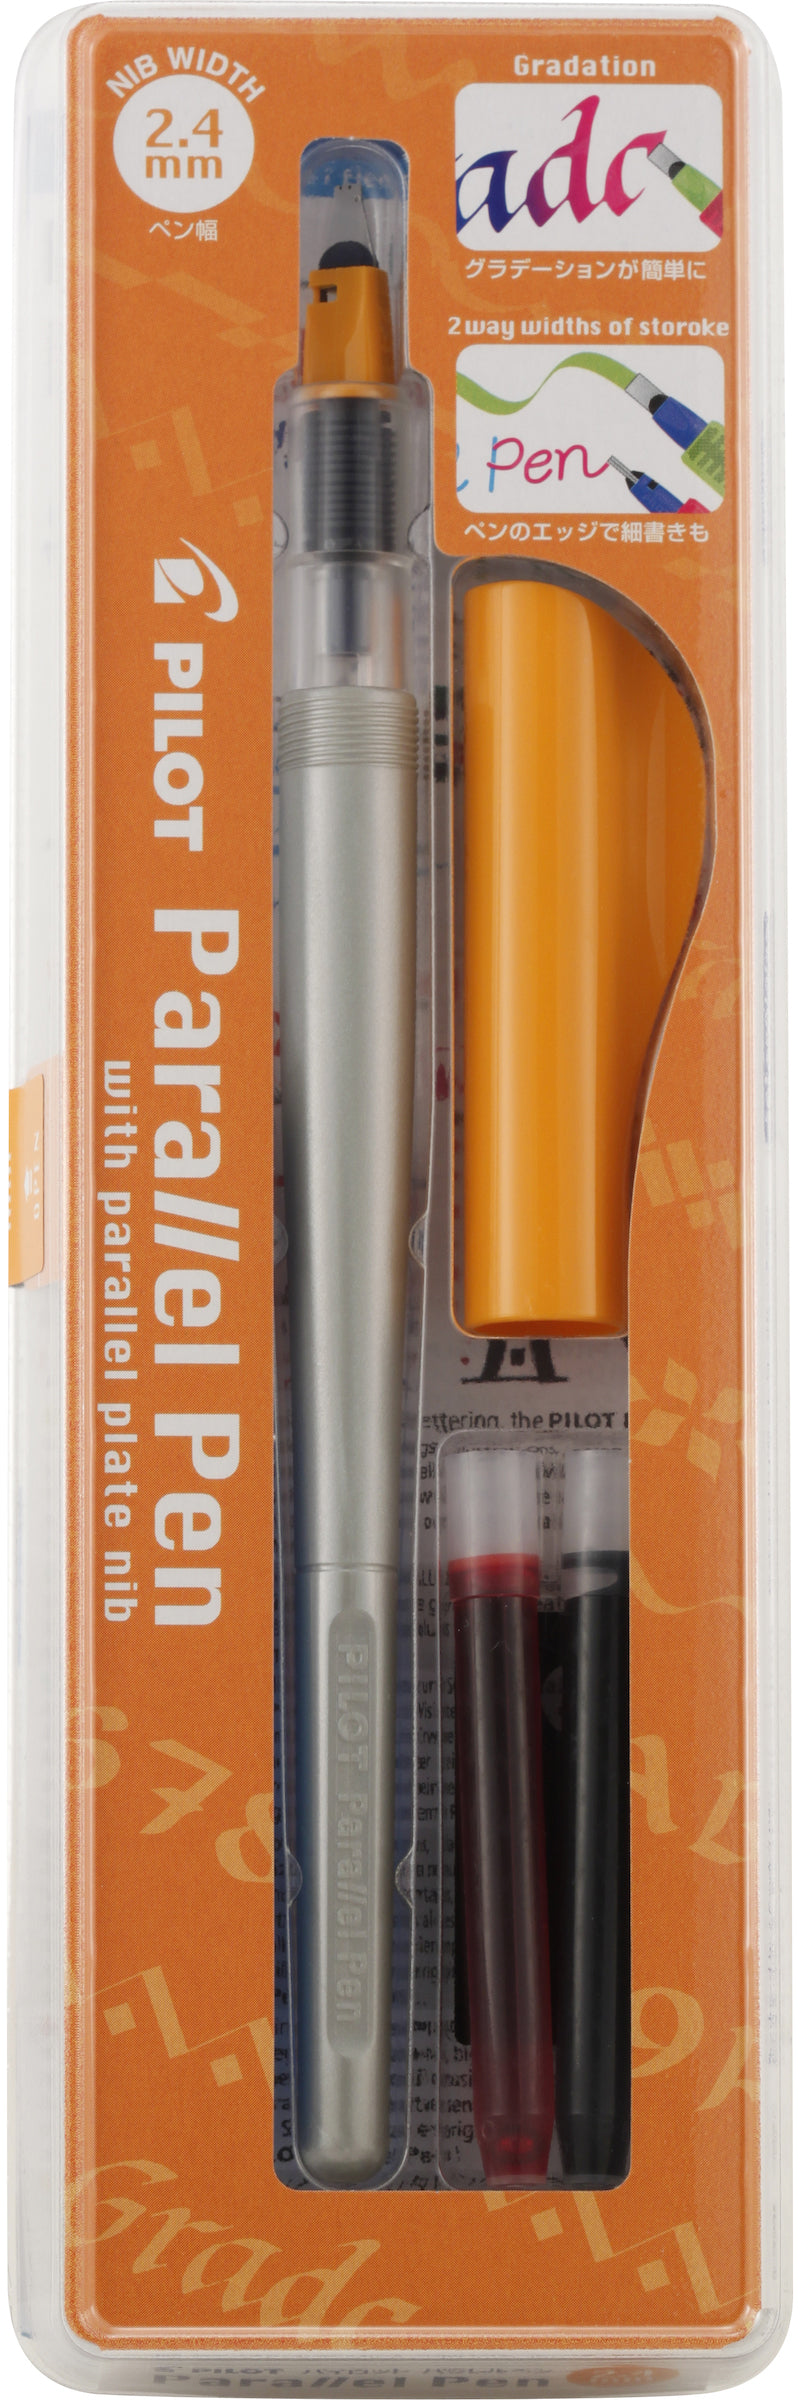 Pilot Parallel Orange 2.4MM Fountain Pen | Pen Store | Pen Place